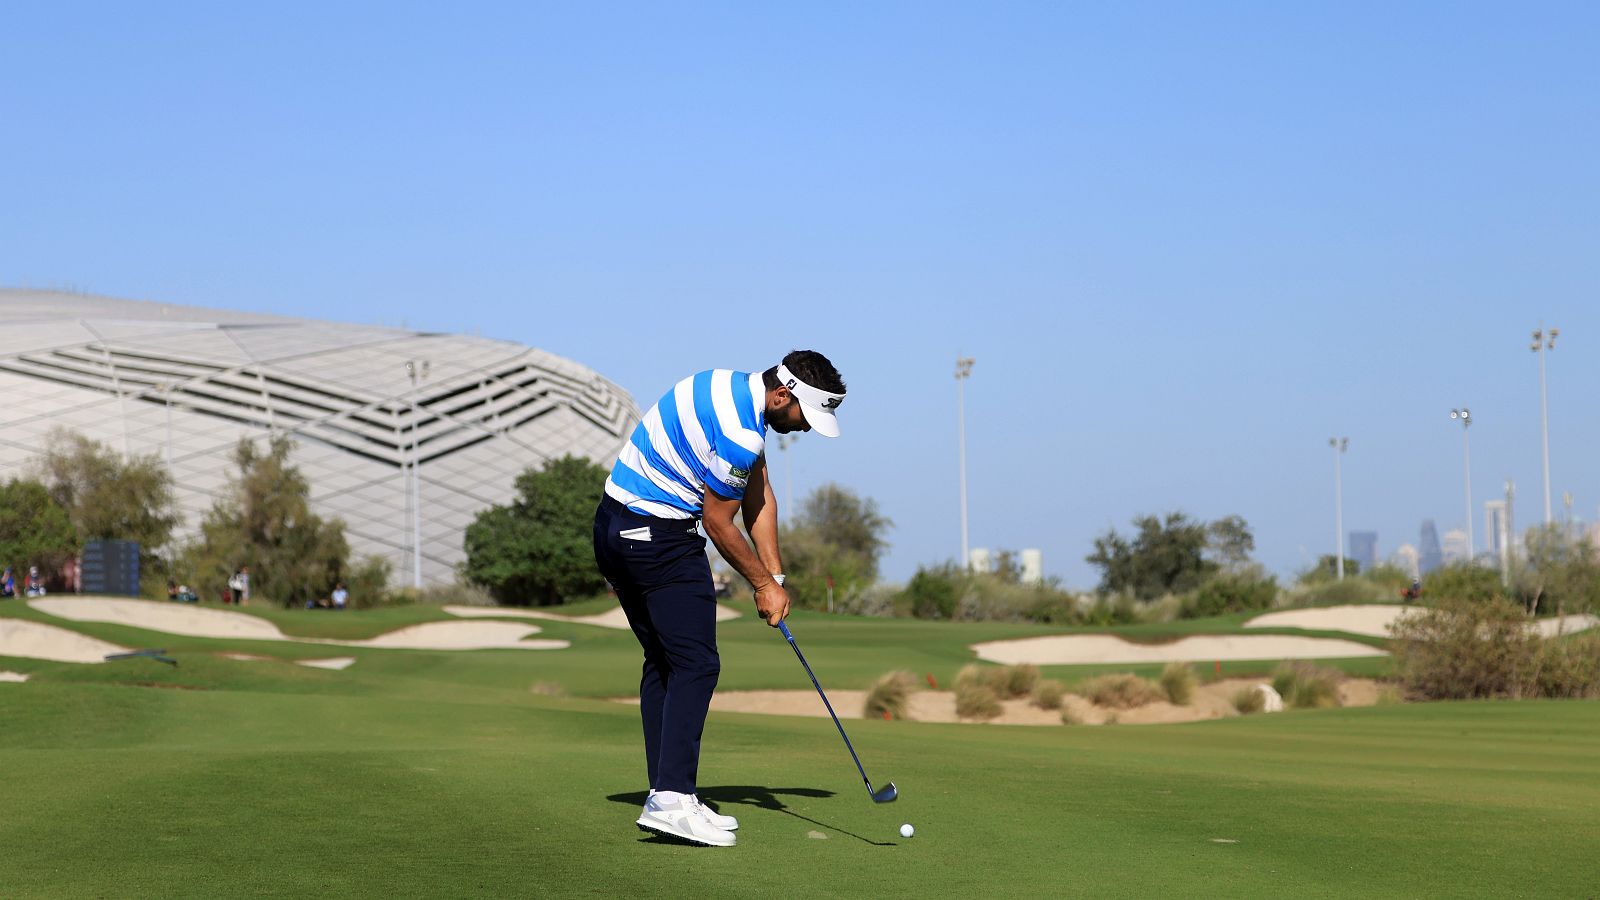 Golf trifft Fußball: Wer auf dem Platz des Education GC spielt, hat einen Blick zum Fußballstadion der Qatar Foundation, wo einige Spiele der WM 2022 stattfinden werden. © Warren Little/Getty Images